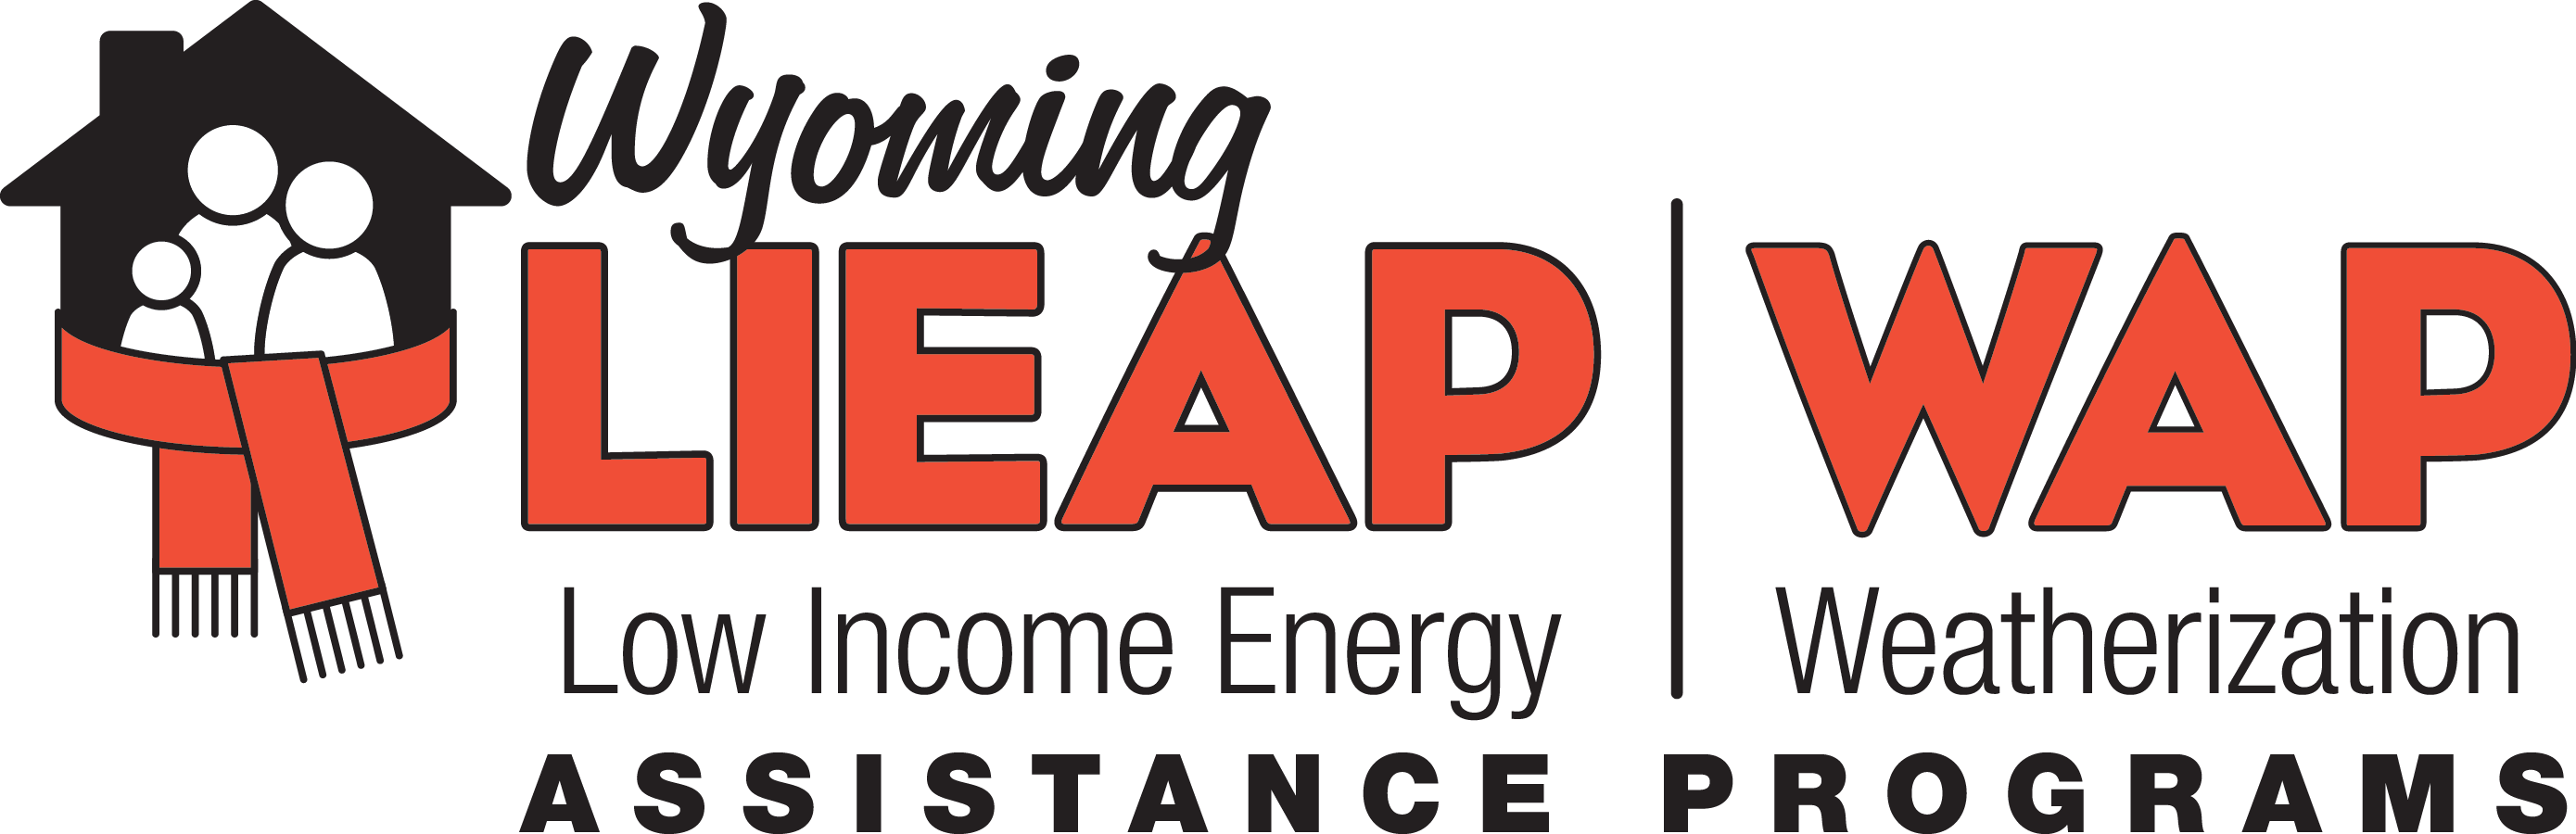 LIEAP WAP logo